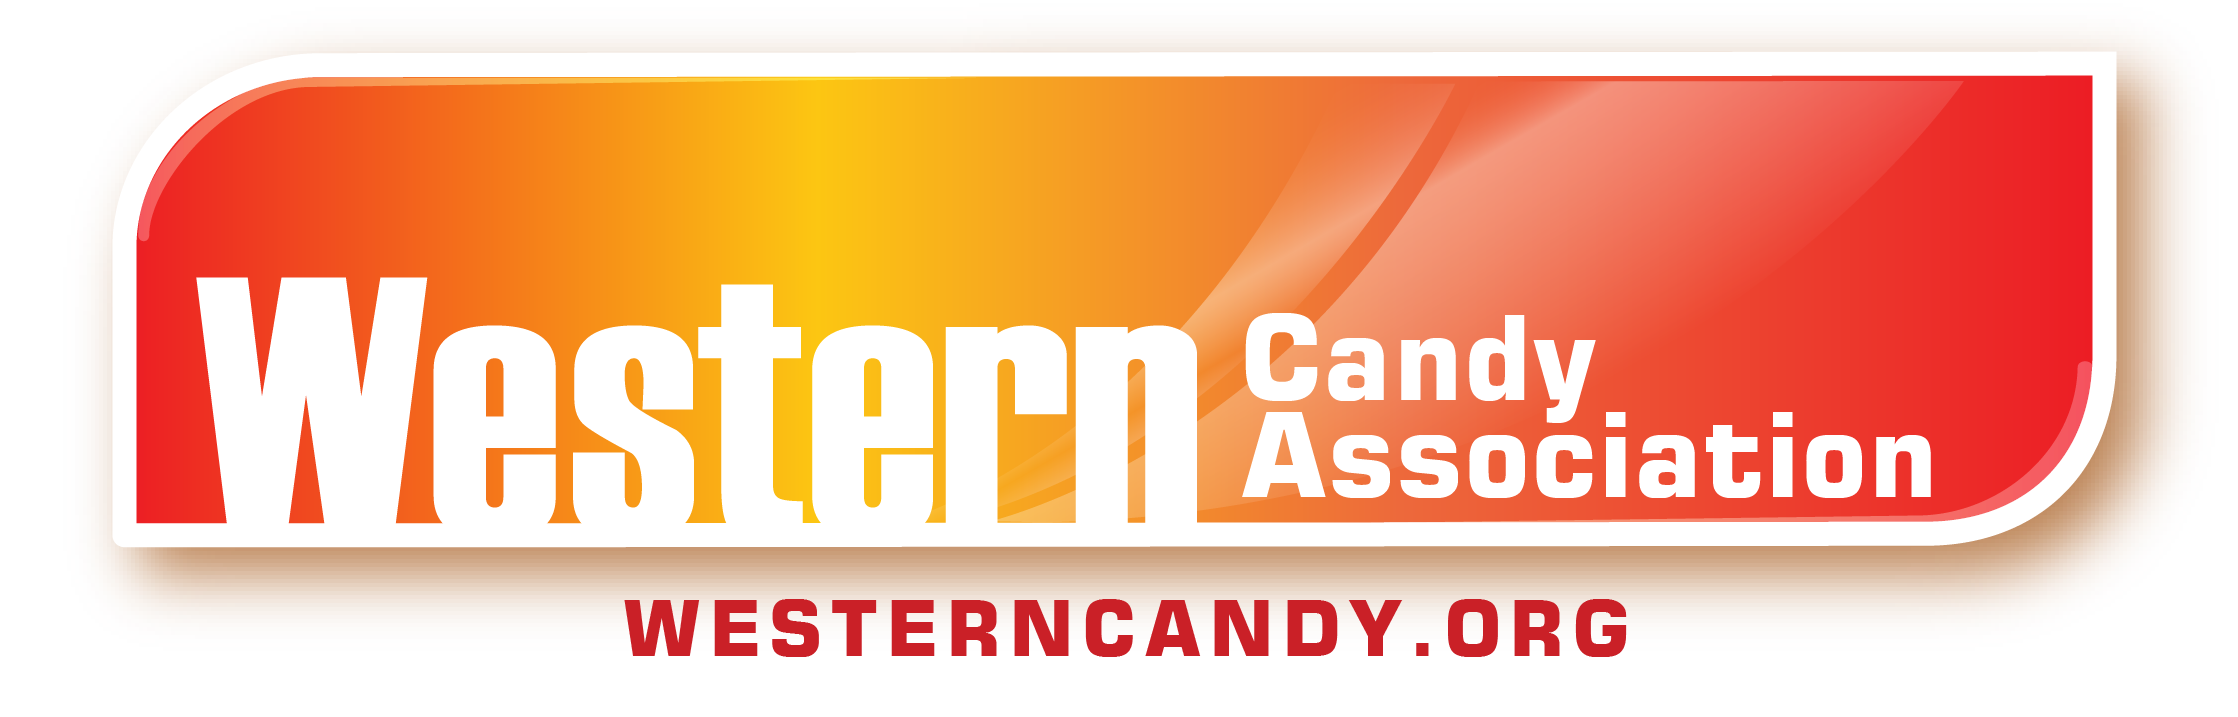 Western Candy Association logo